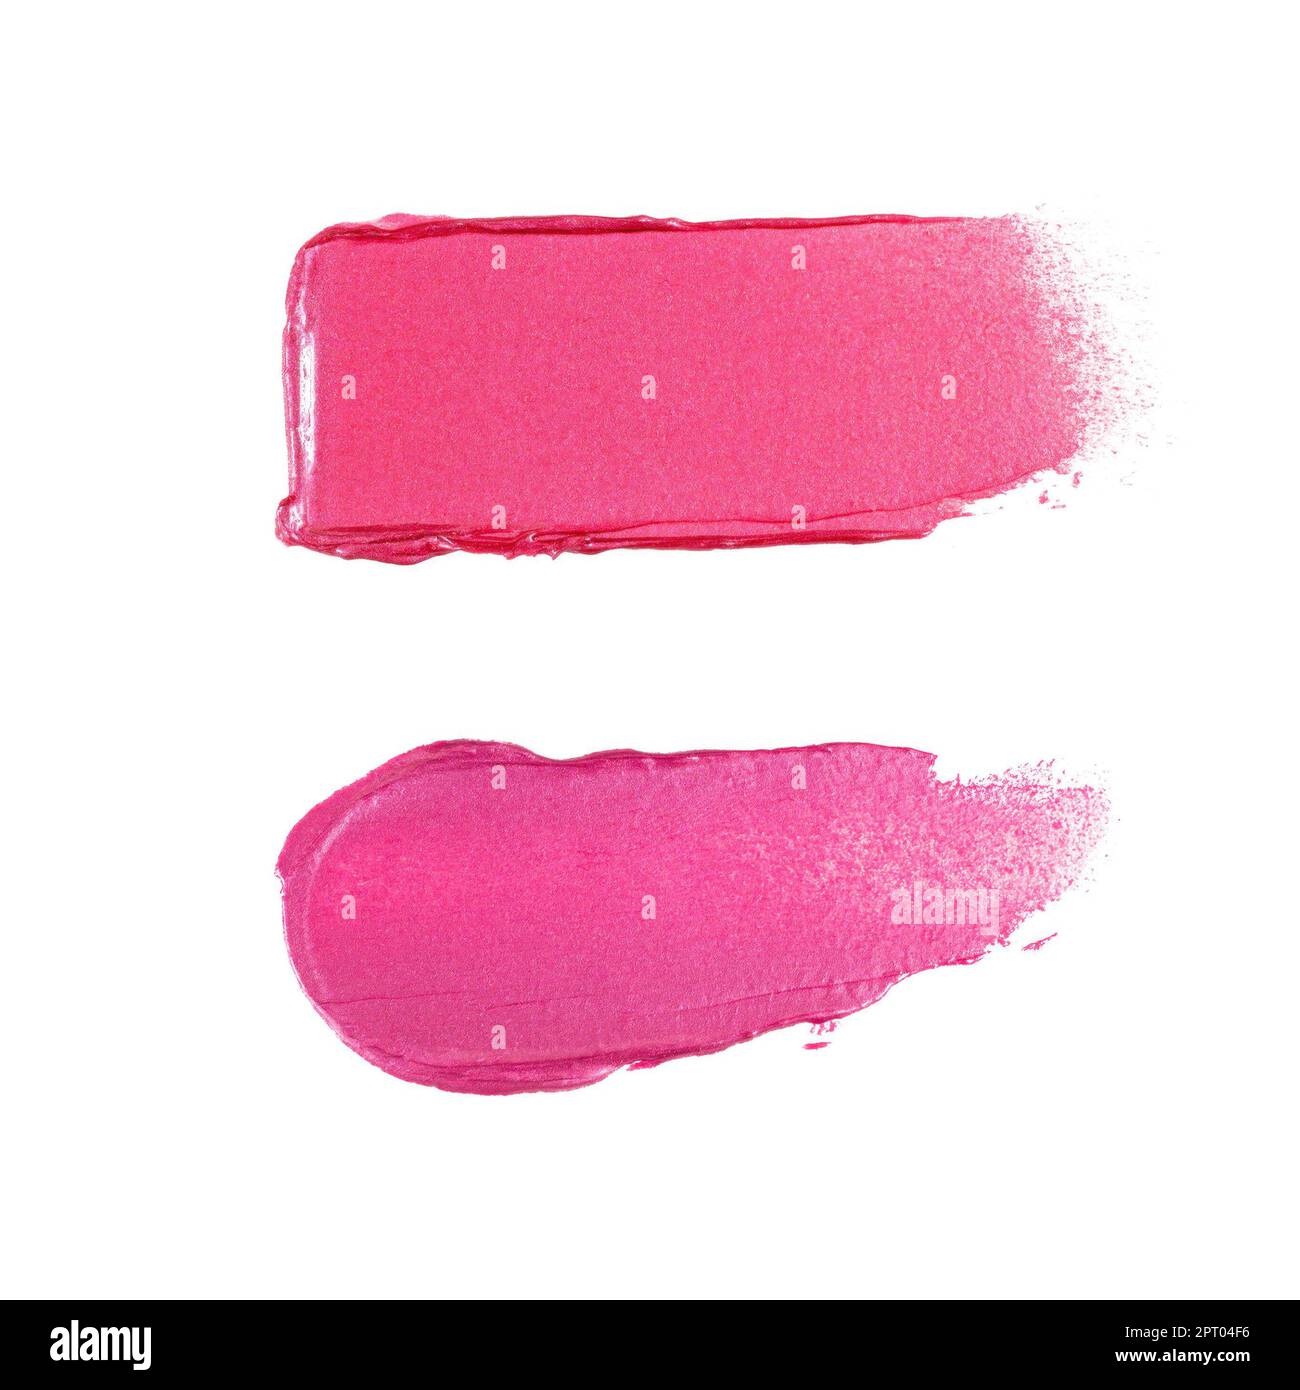 Lippenstift in leuchtendem Rosa oder Lipgloss mit schimmerndem Farbmuster und glattem Abstrich. Kosmetik verschmiert Proben für das Design von Make-up-Produkten. Stockfoto